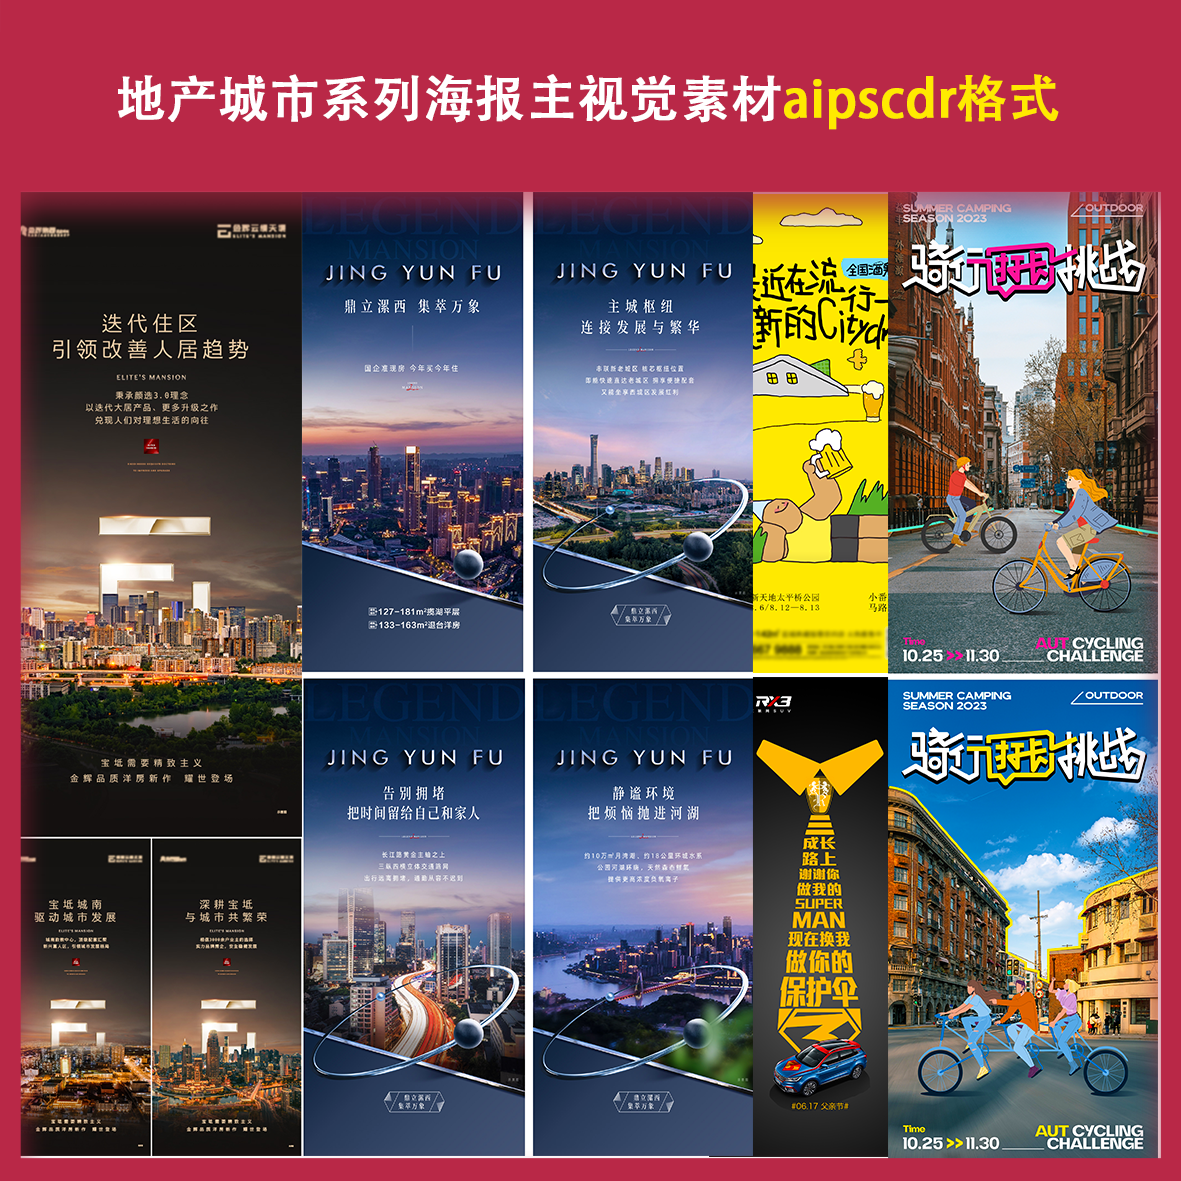 高端房地产城市风格系列价值点海报活动宣传高端中国风设计素材文